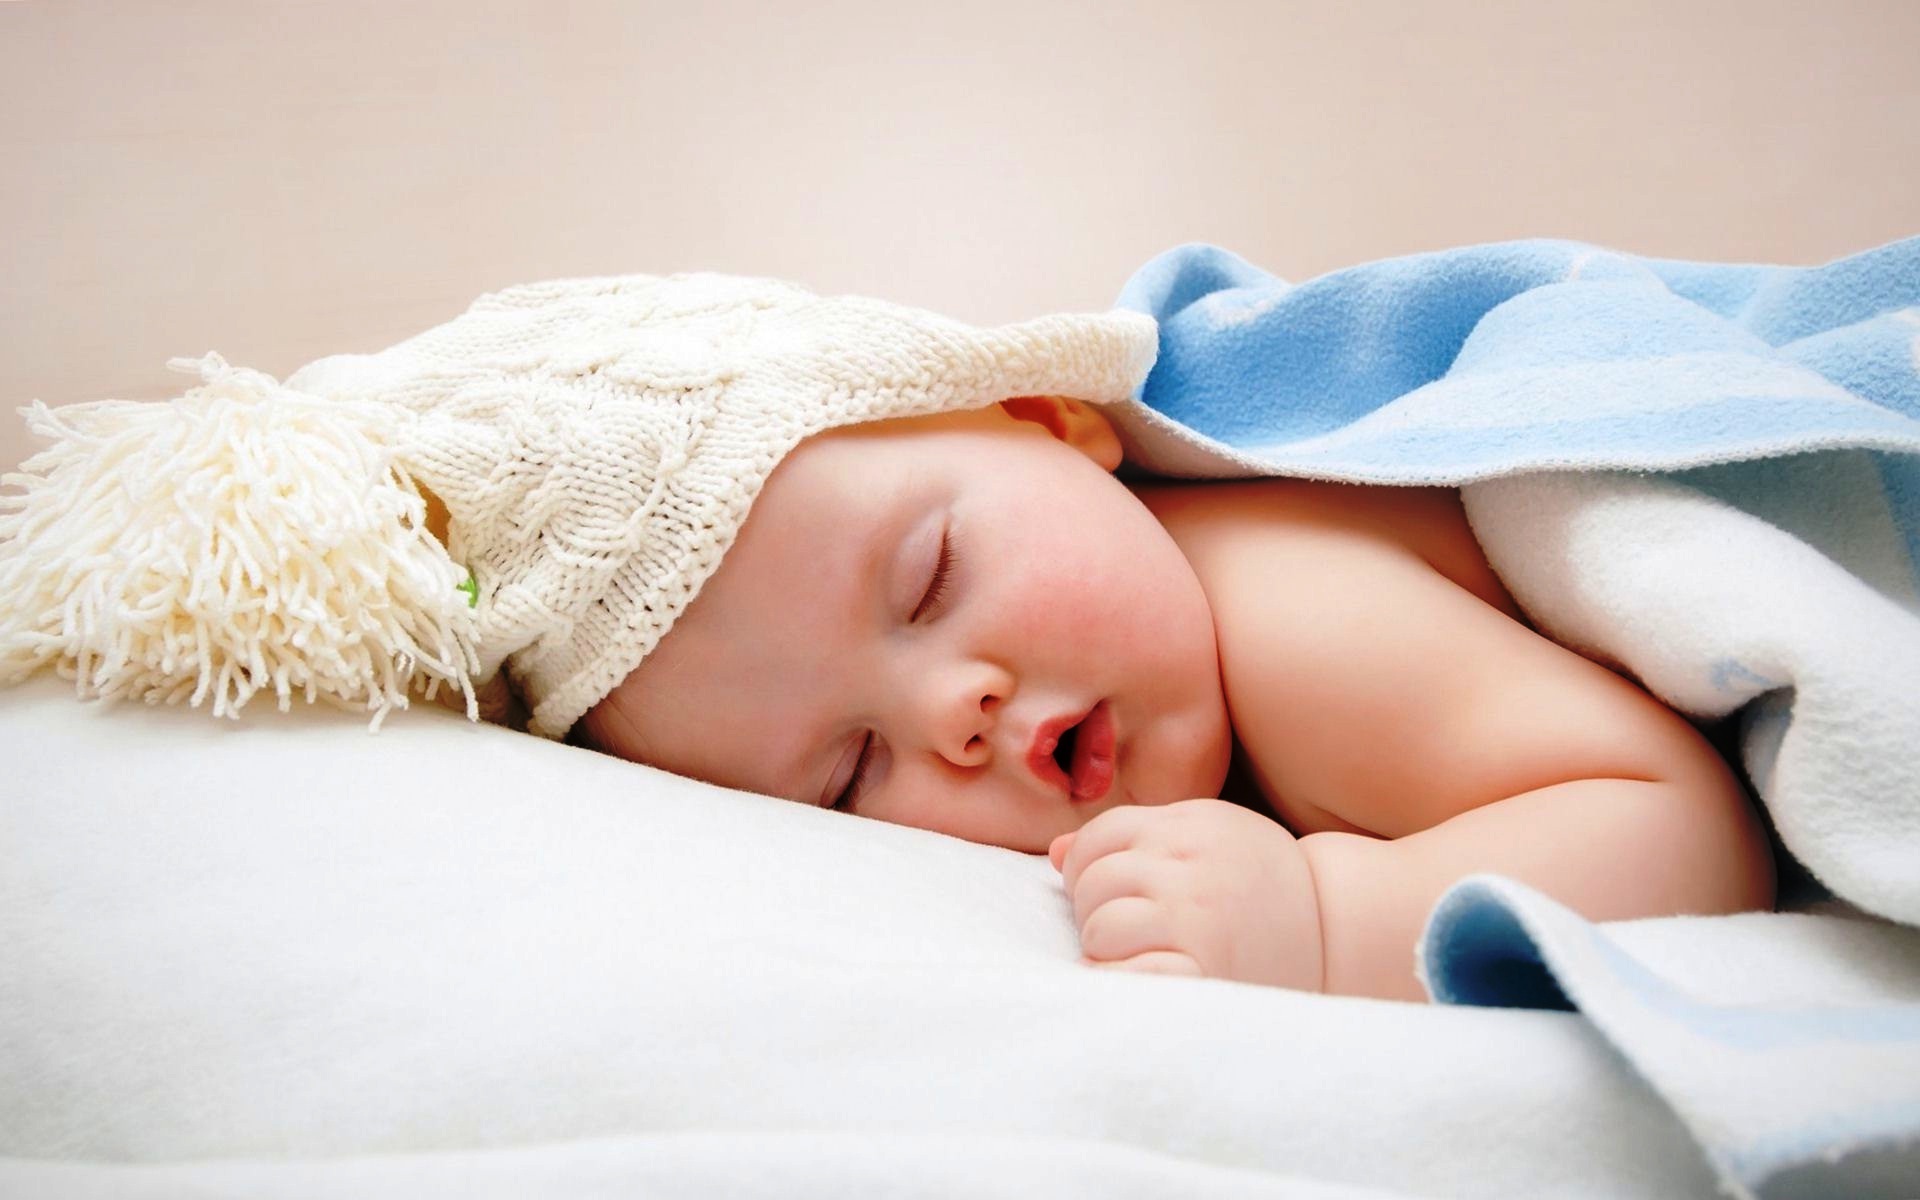 buona notte baby wallpaper,bambino,bambino,fotografia,dormire,pisolino